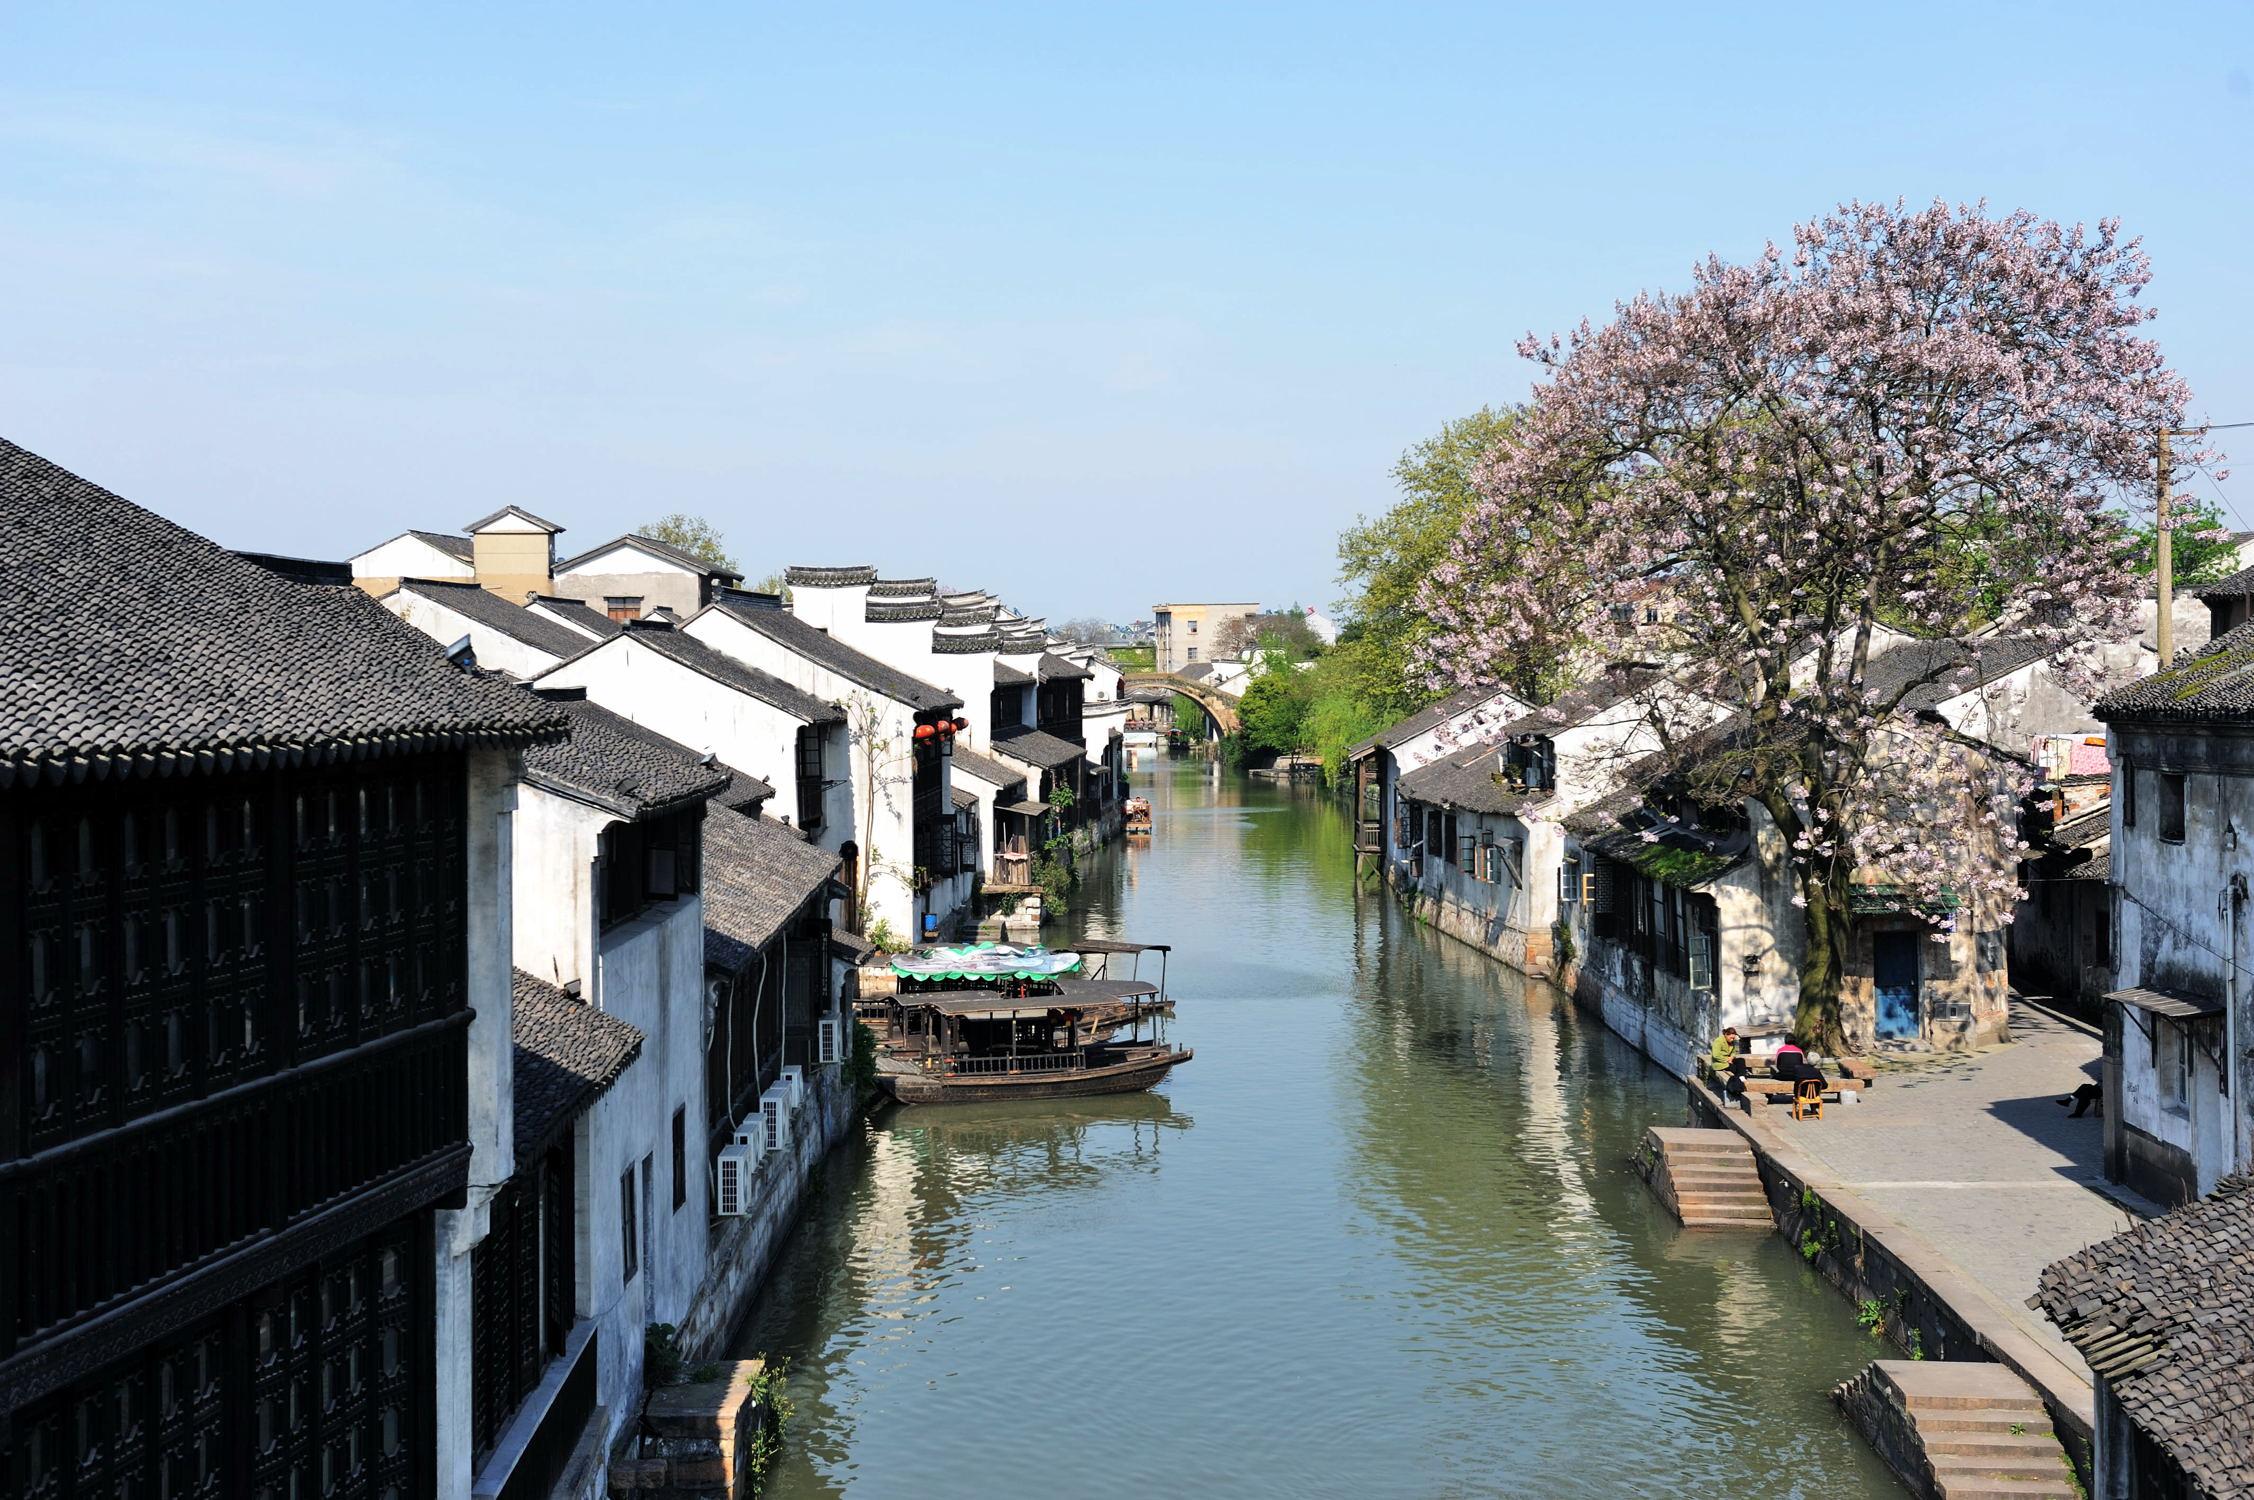 在历史长河中,南浔古镇的建筑吸收了中西文化的精髓,形成了特色的建筑